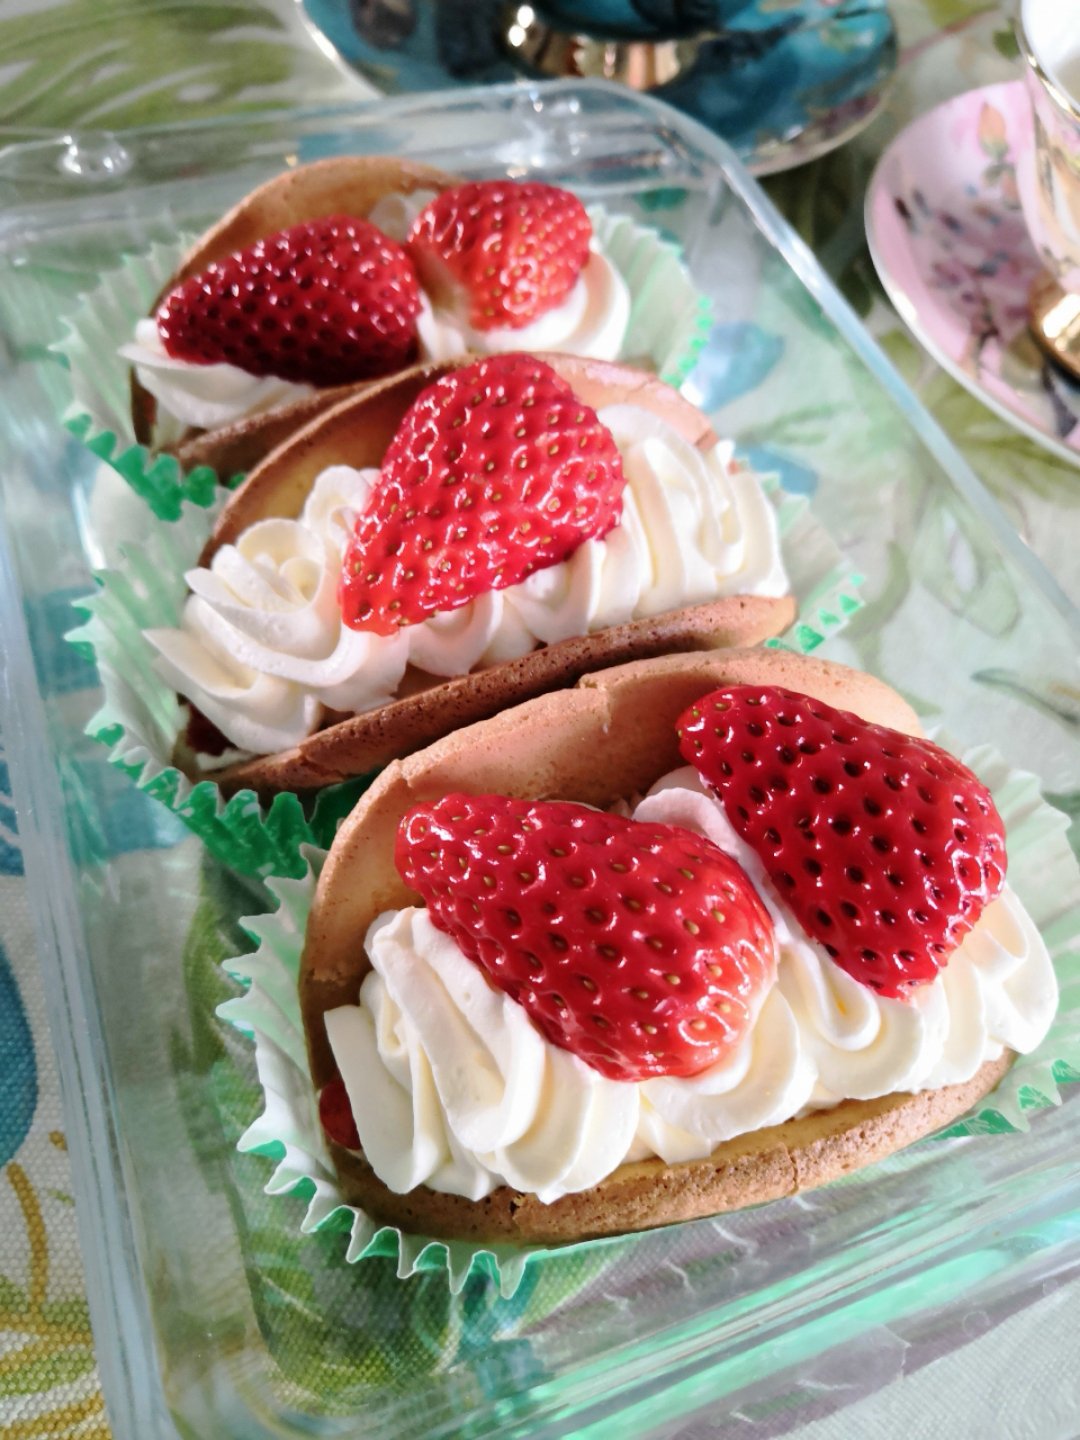 韩国最热门的甜品店Le Bread Lab的草莓蛋糕卷